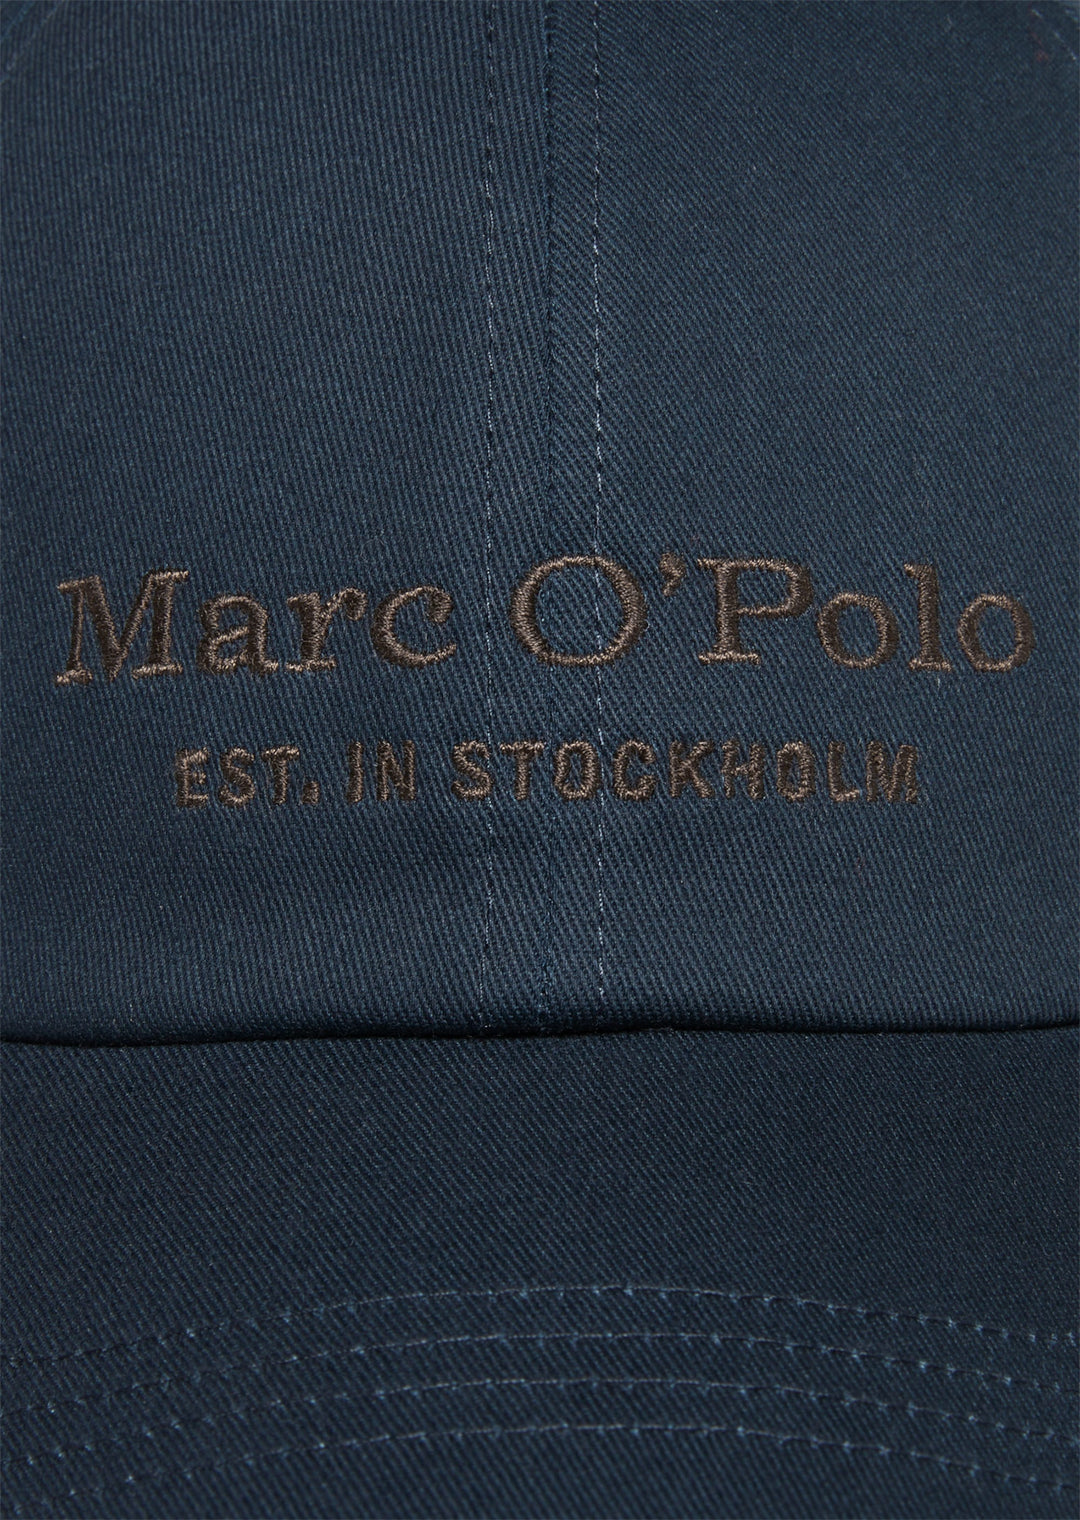 Marc O'Polo Cap/Kapa M22806801076